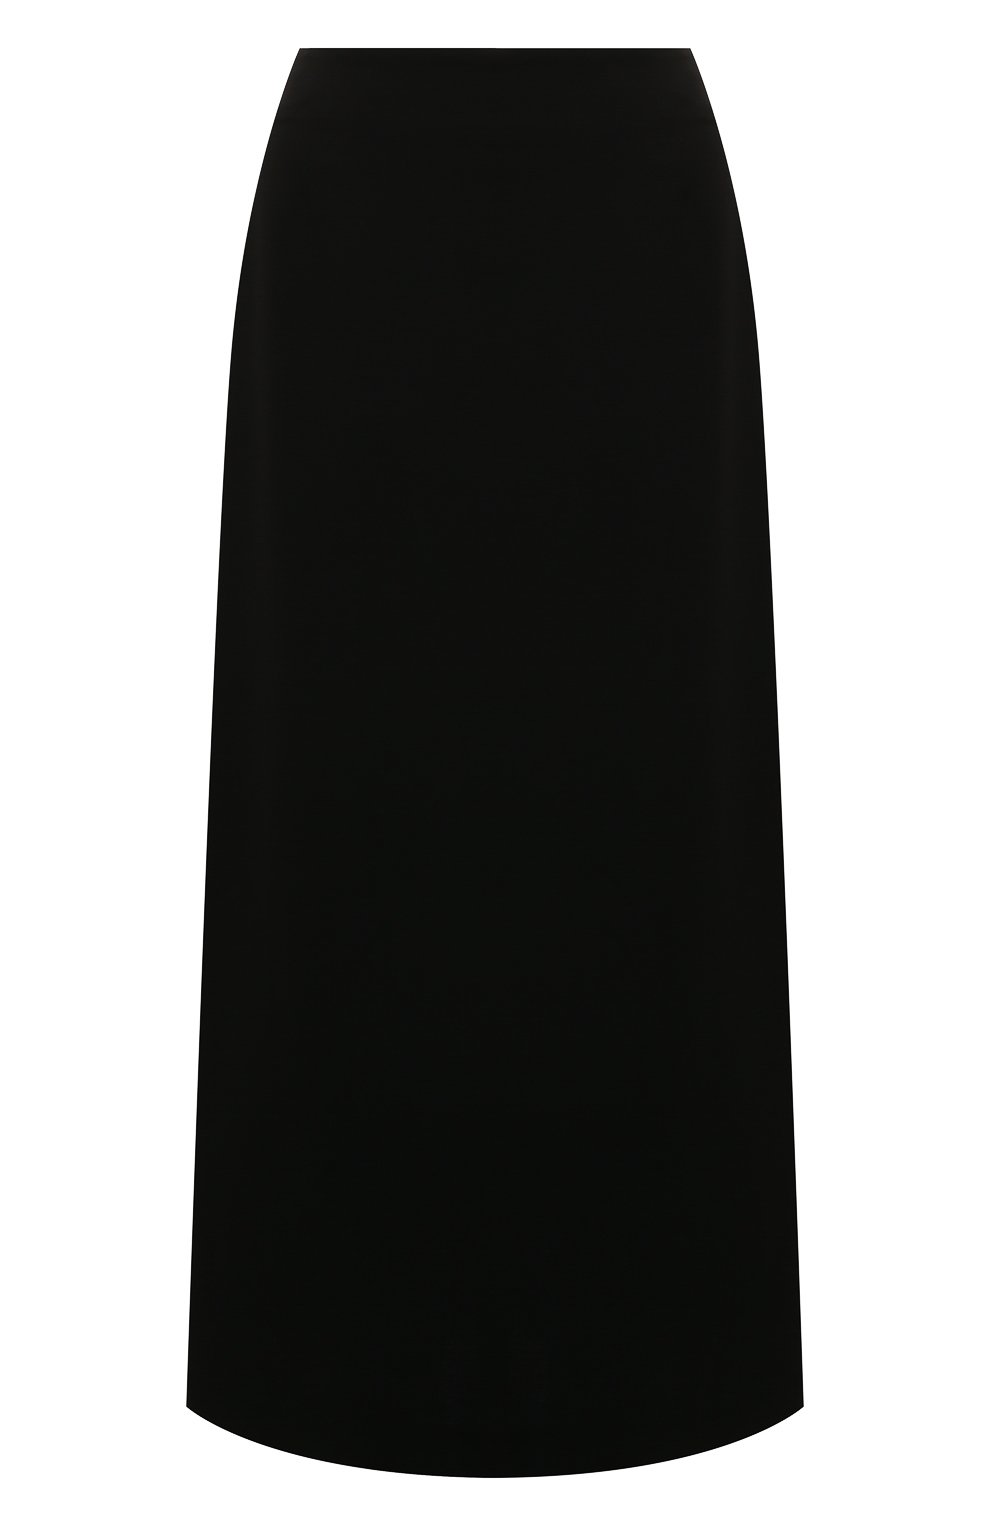 Женская юбка из шелка и шерсти AGREEG черного цвета, арт. 08150478 | Фото 1 (Материал внешний: Шелк; Женское Кросс-КТ: Юбка-одежда; Стили: Классический; Длина Ж (юбки, платья, шорты): Миди)